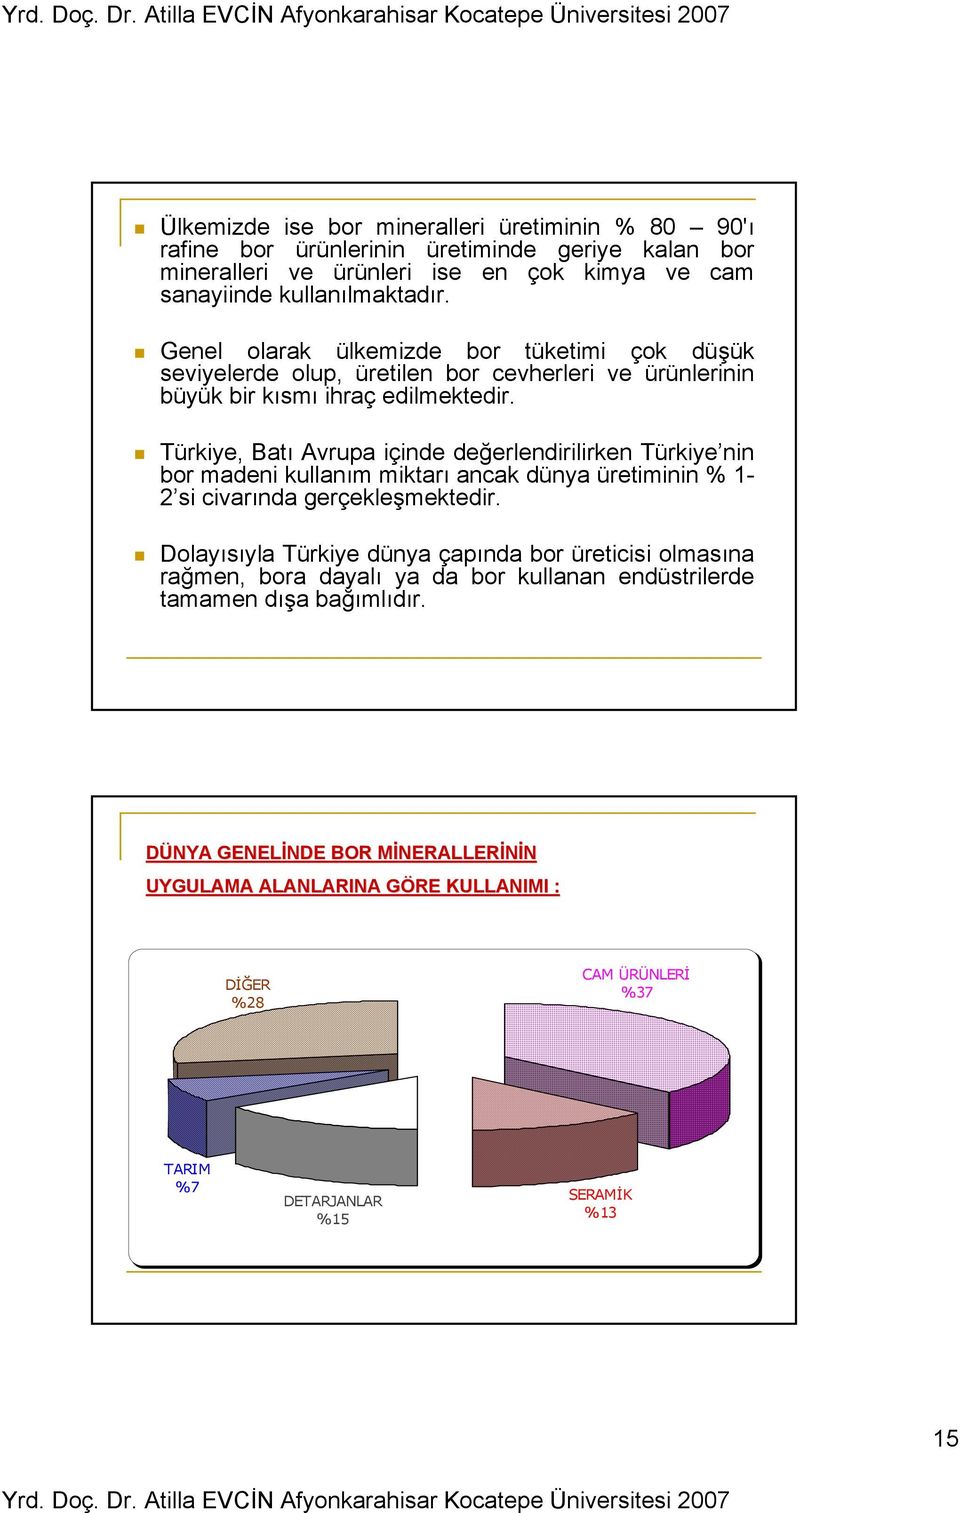 Türkiye, Batı Avrupa içinde değerlendirilirken Türkiye nin bor madeni kullanım miktarı ancak dünya üretiminin % 1-2 si civarında gerçekleşmektedir.